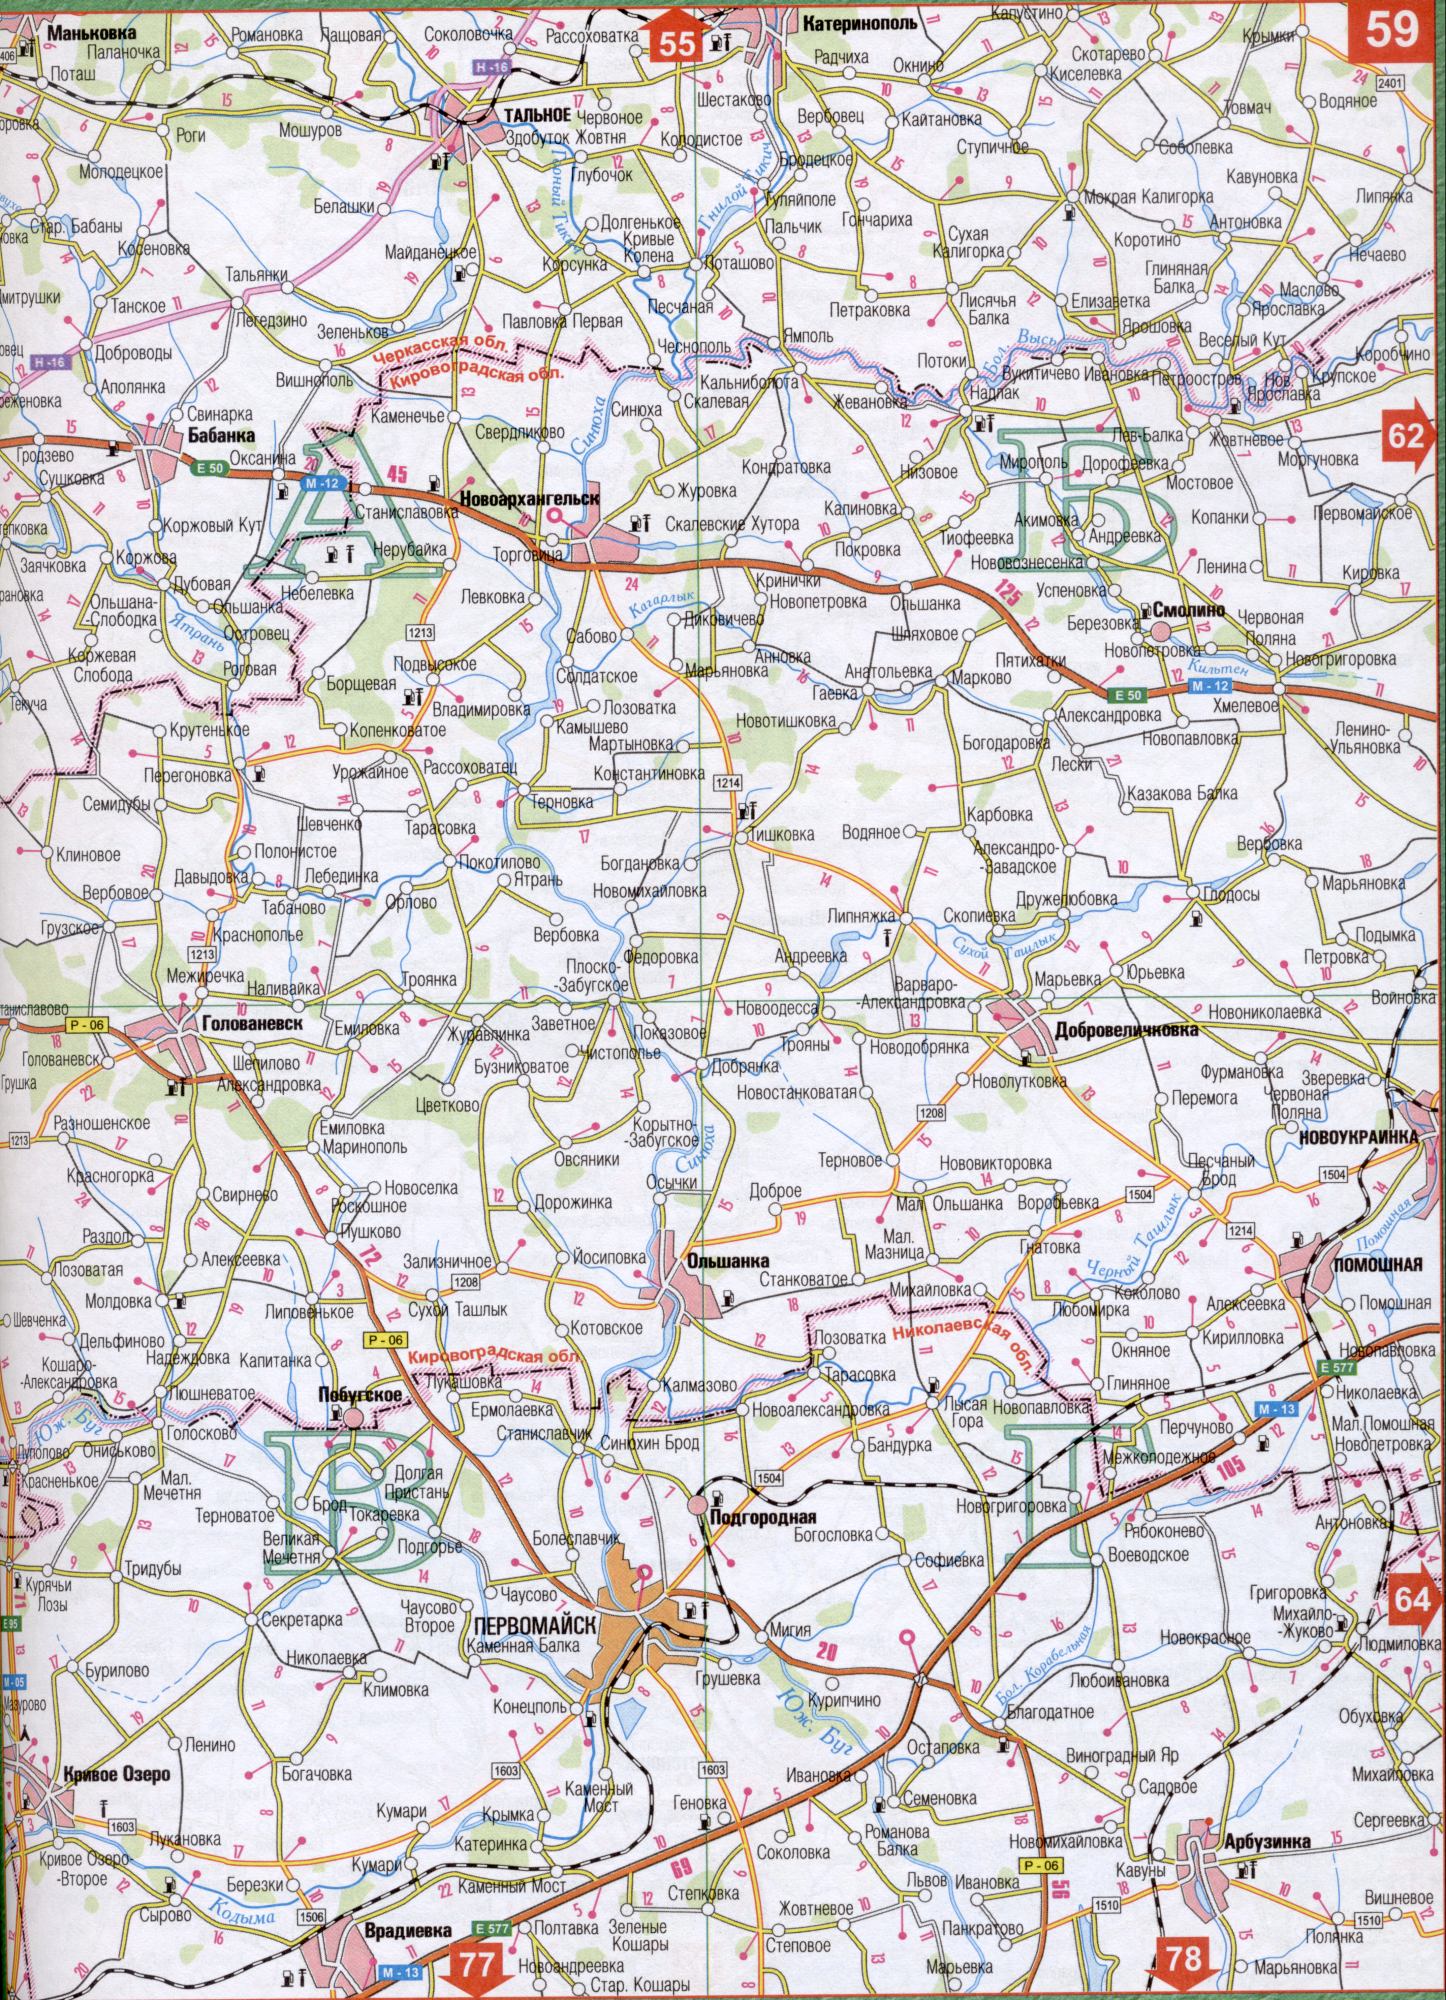 Karte von Tscherkassy Region der Ukraine (regionale Zentrum von Tscherkassy). Laden Sie eine detaillierte Karte von Straßen, die A1 - Kagarlyk, Yatran, kilt